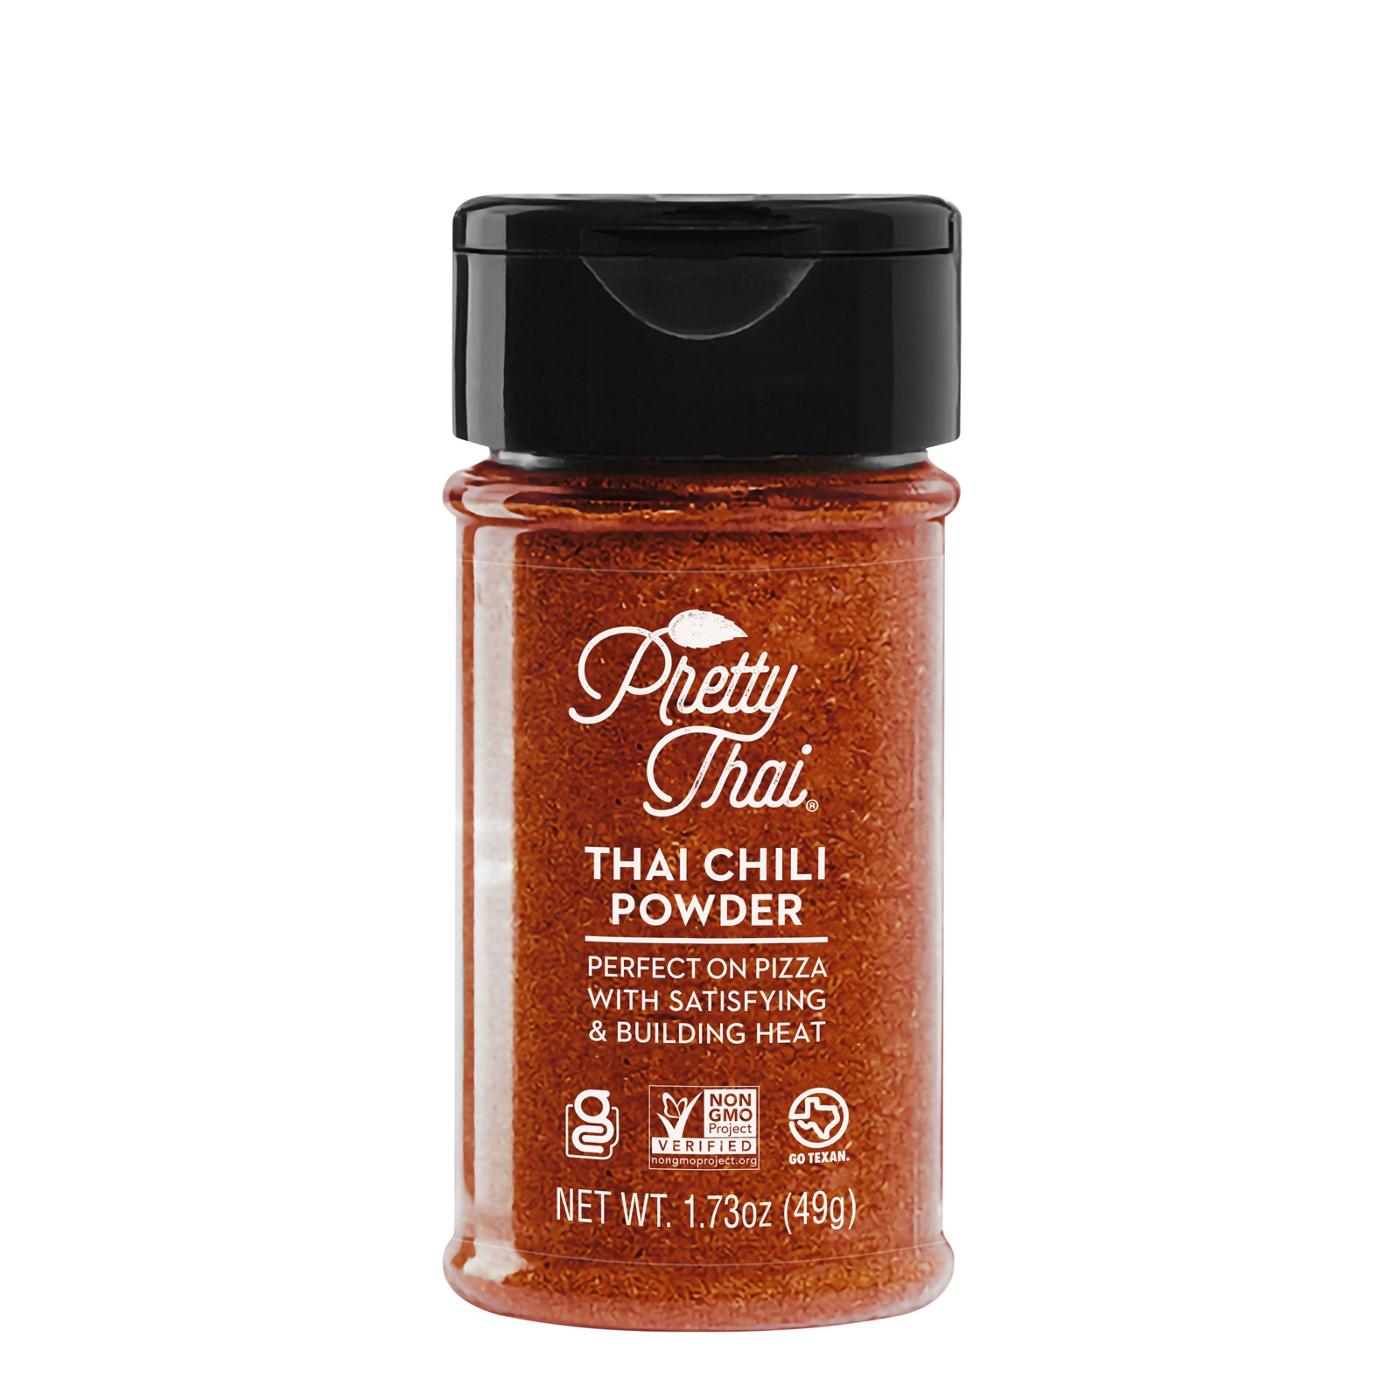 Pretty Thai Thai Chili Powder; image 1 of 2